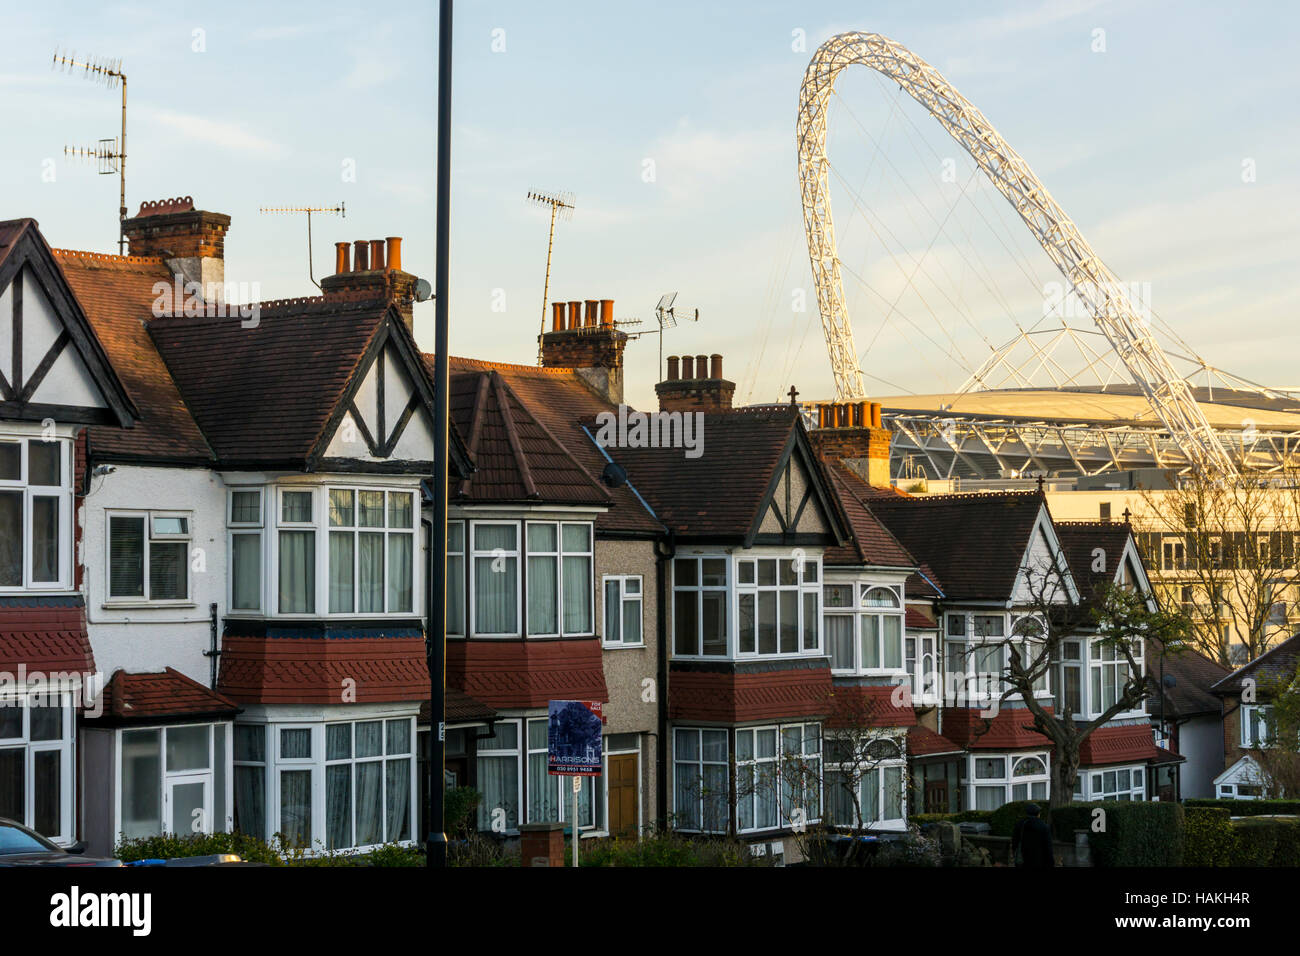 Der Bogen des Wembley-Stadion gesehen über den Dächern von s-Bahn beherbergt Wembley, London. Stockfoto